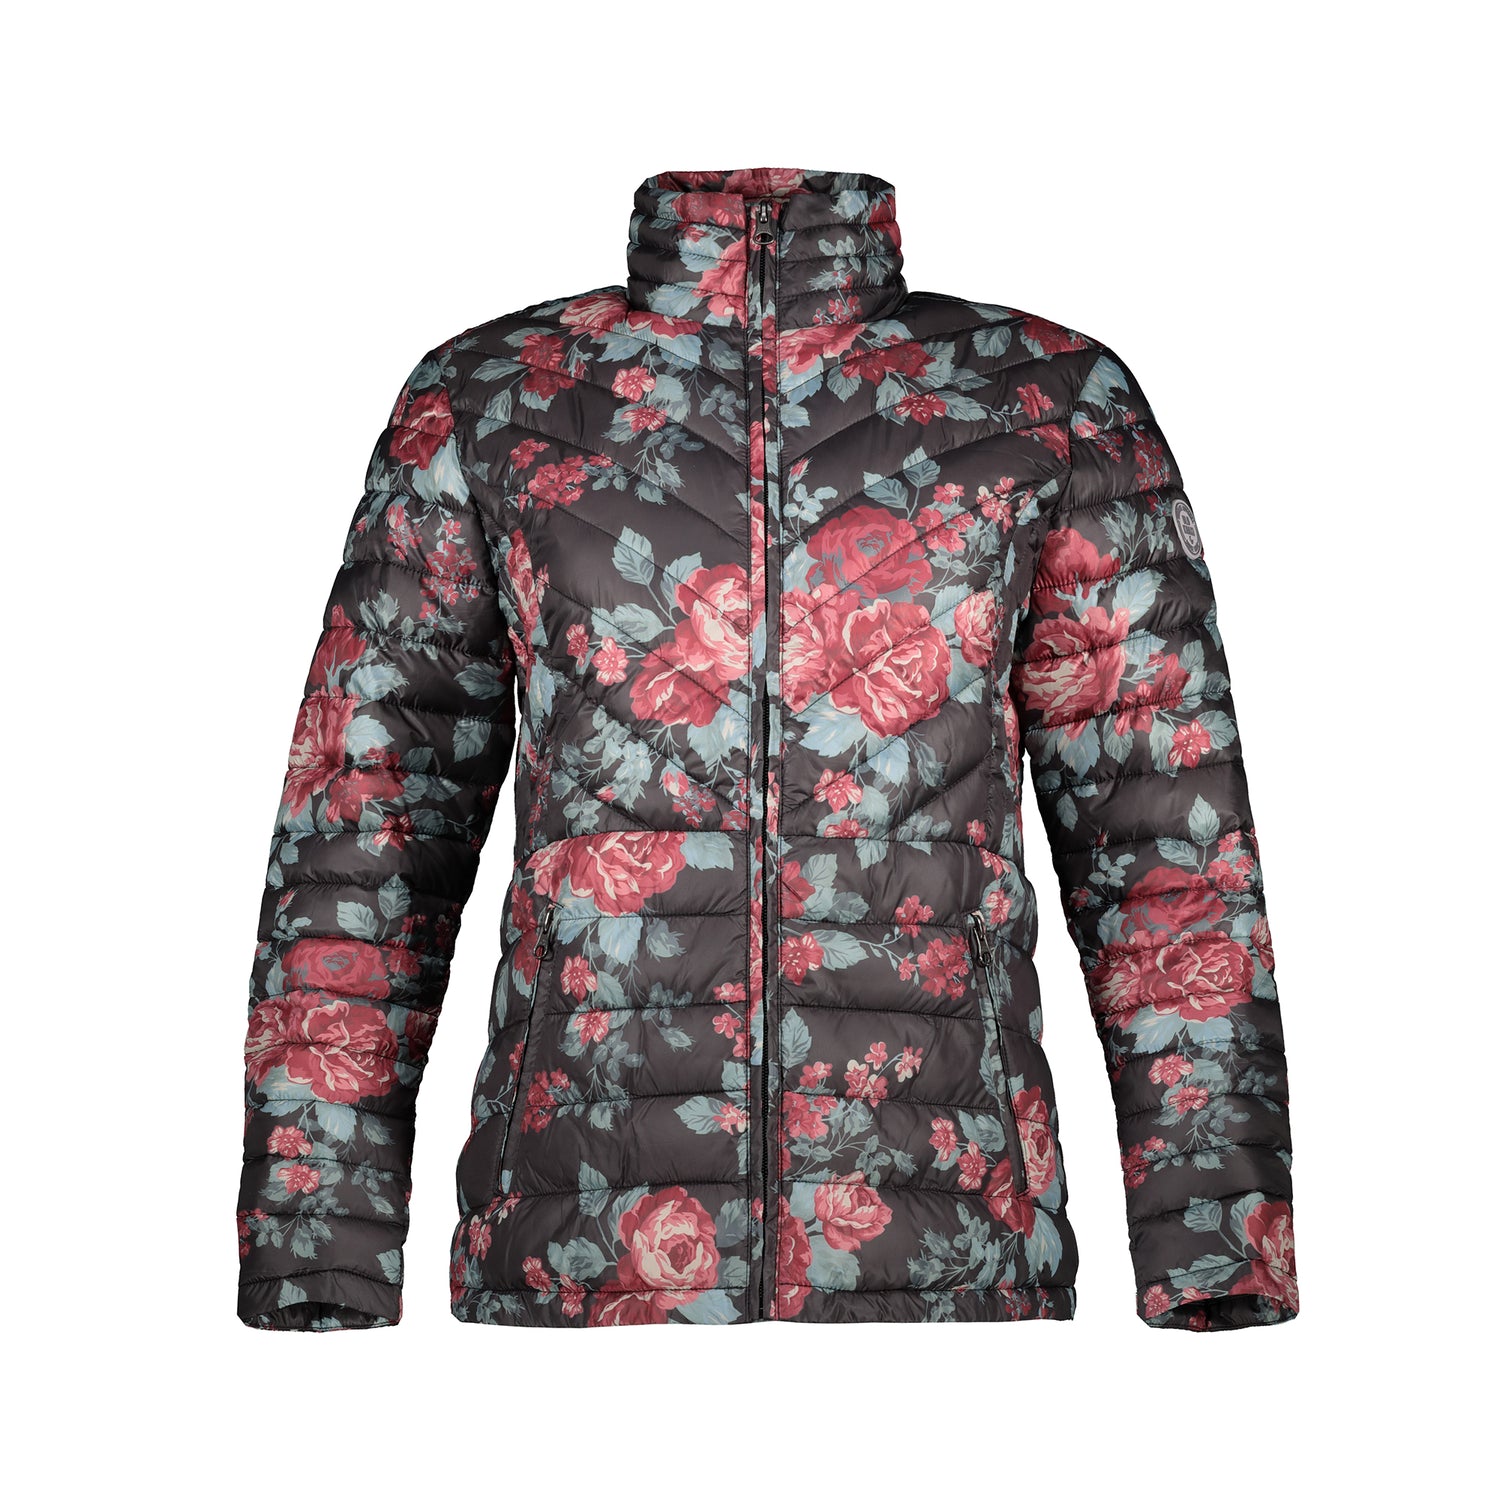 PnP floral jacket on mannequin